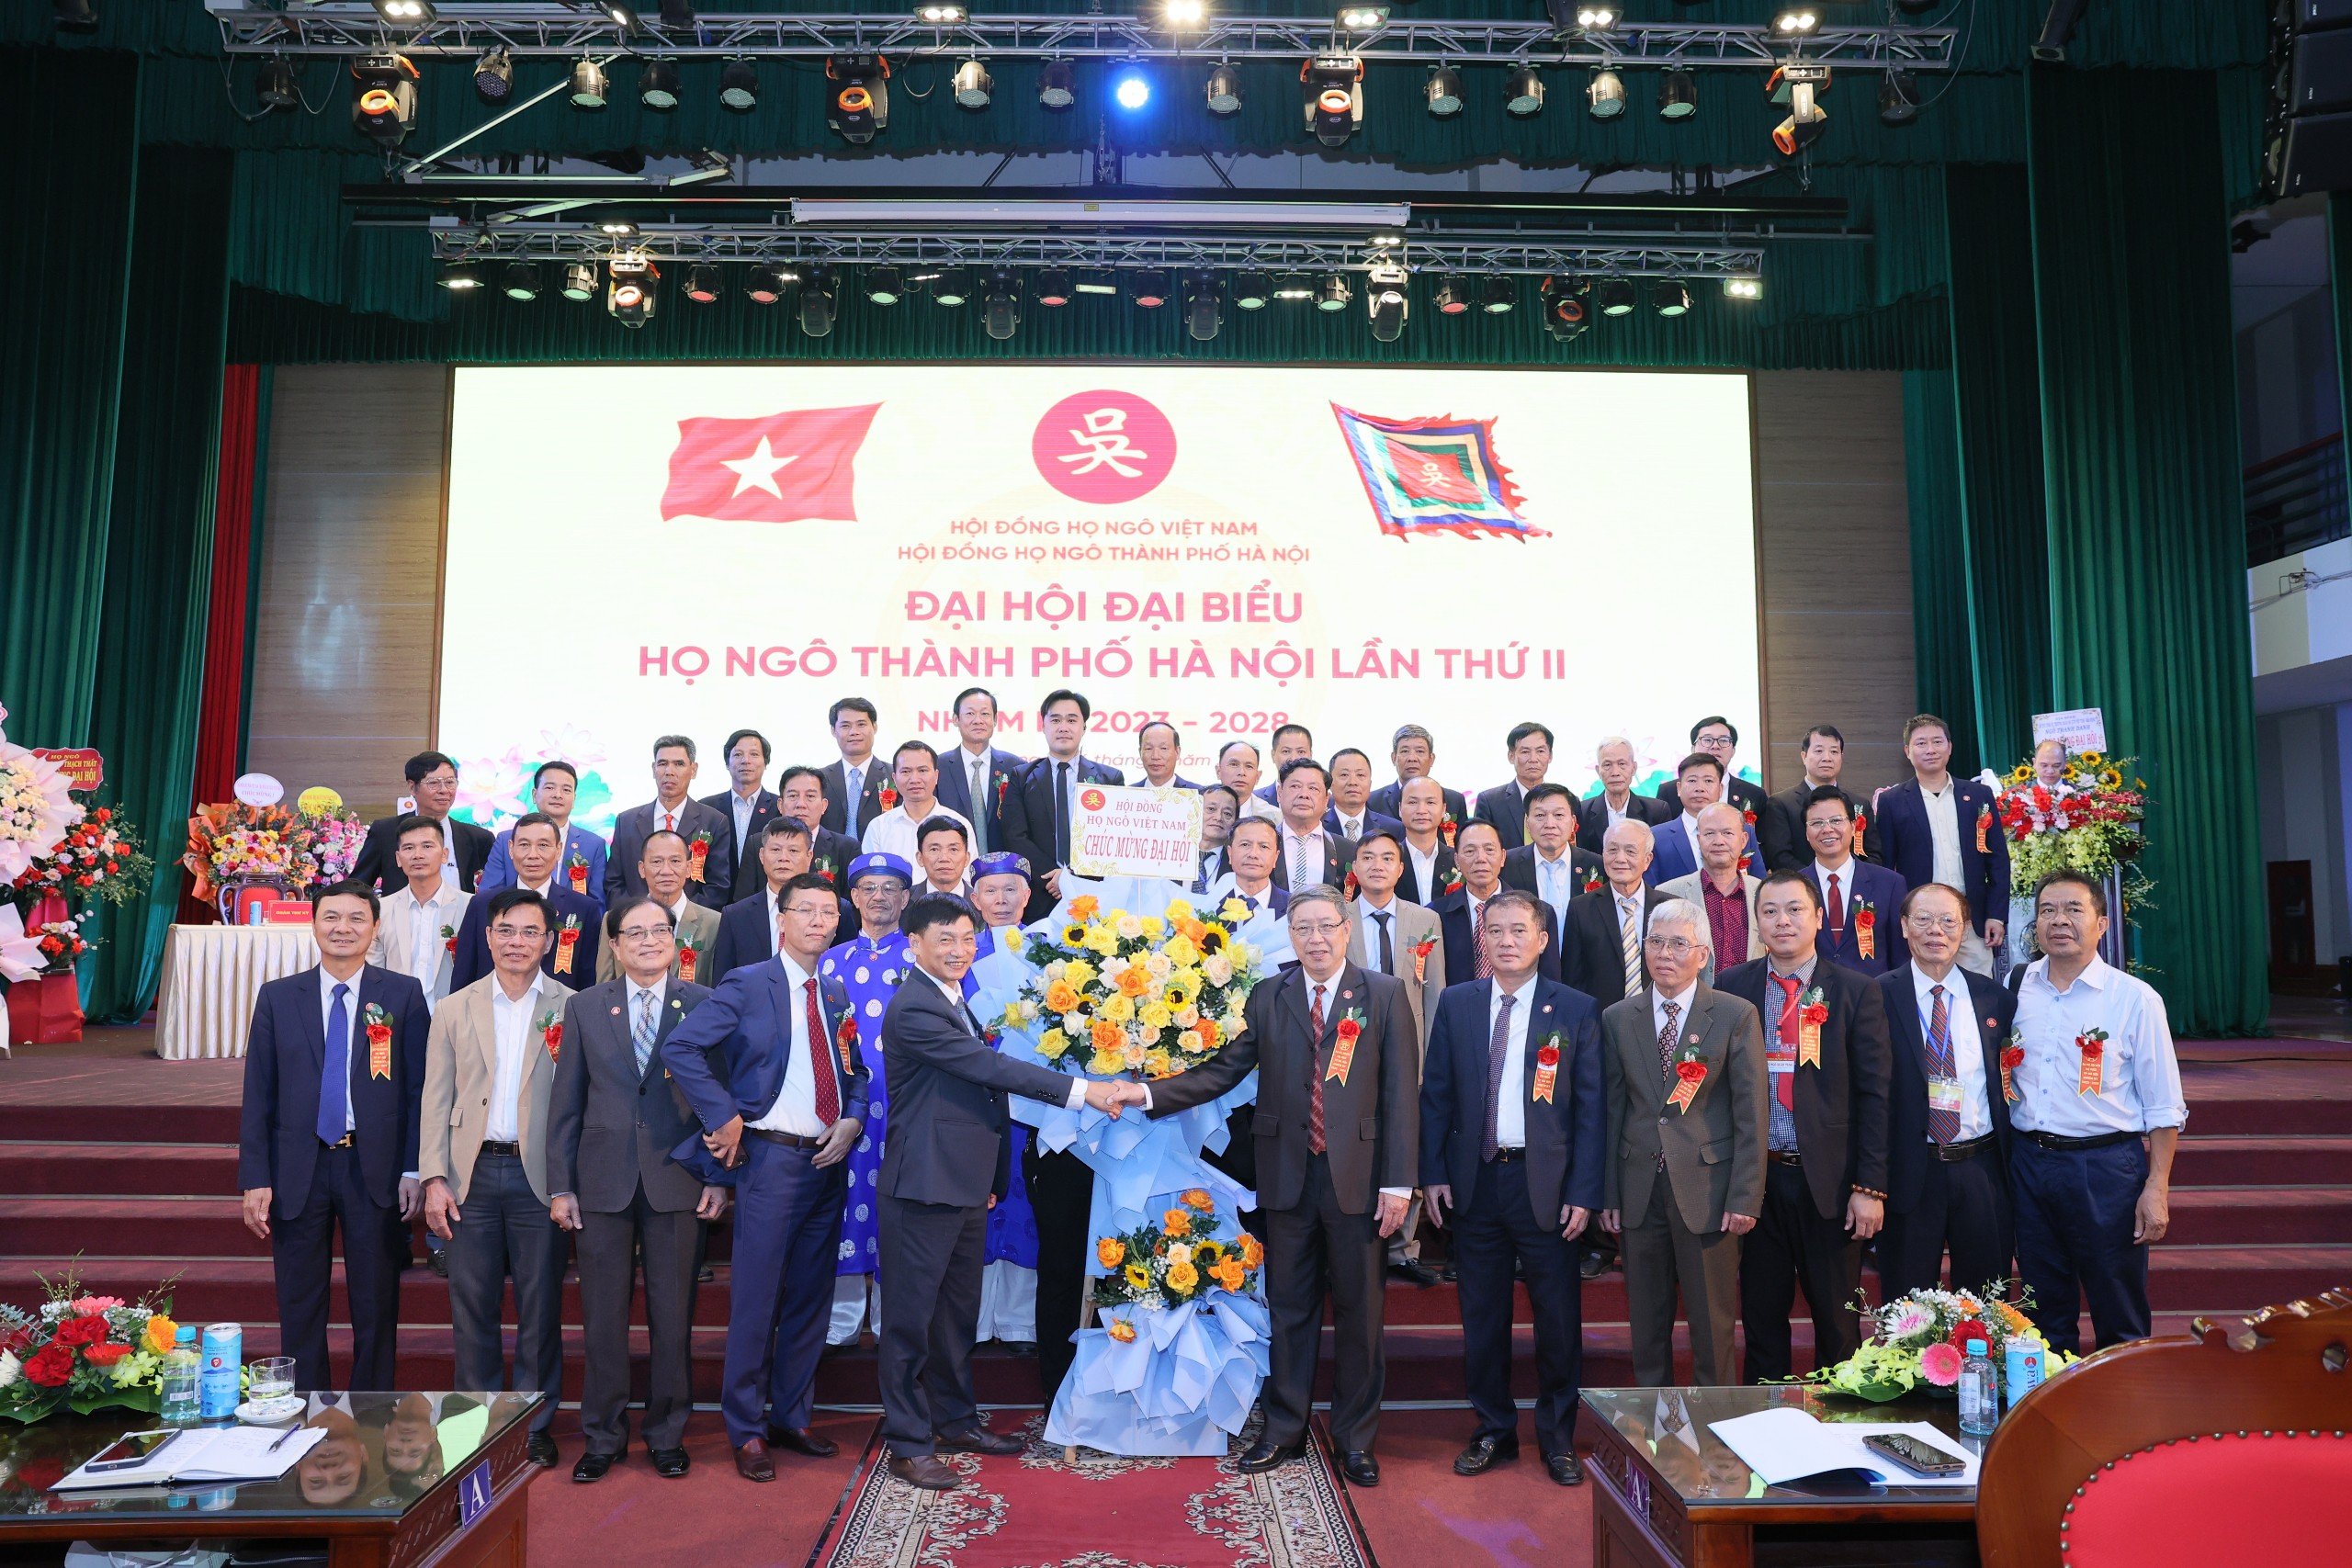 Ban chấp hành Hội đồng họ Ngô thành phố Hà Nội nhiệm kỳ II (2023 - 2028) ra mắt.